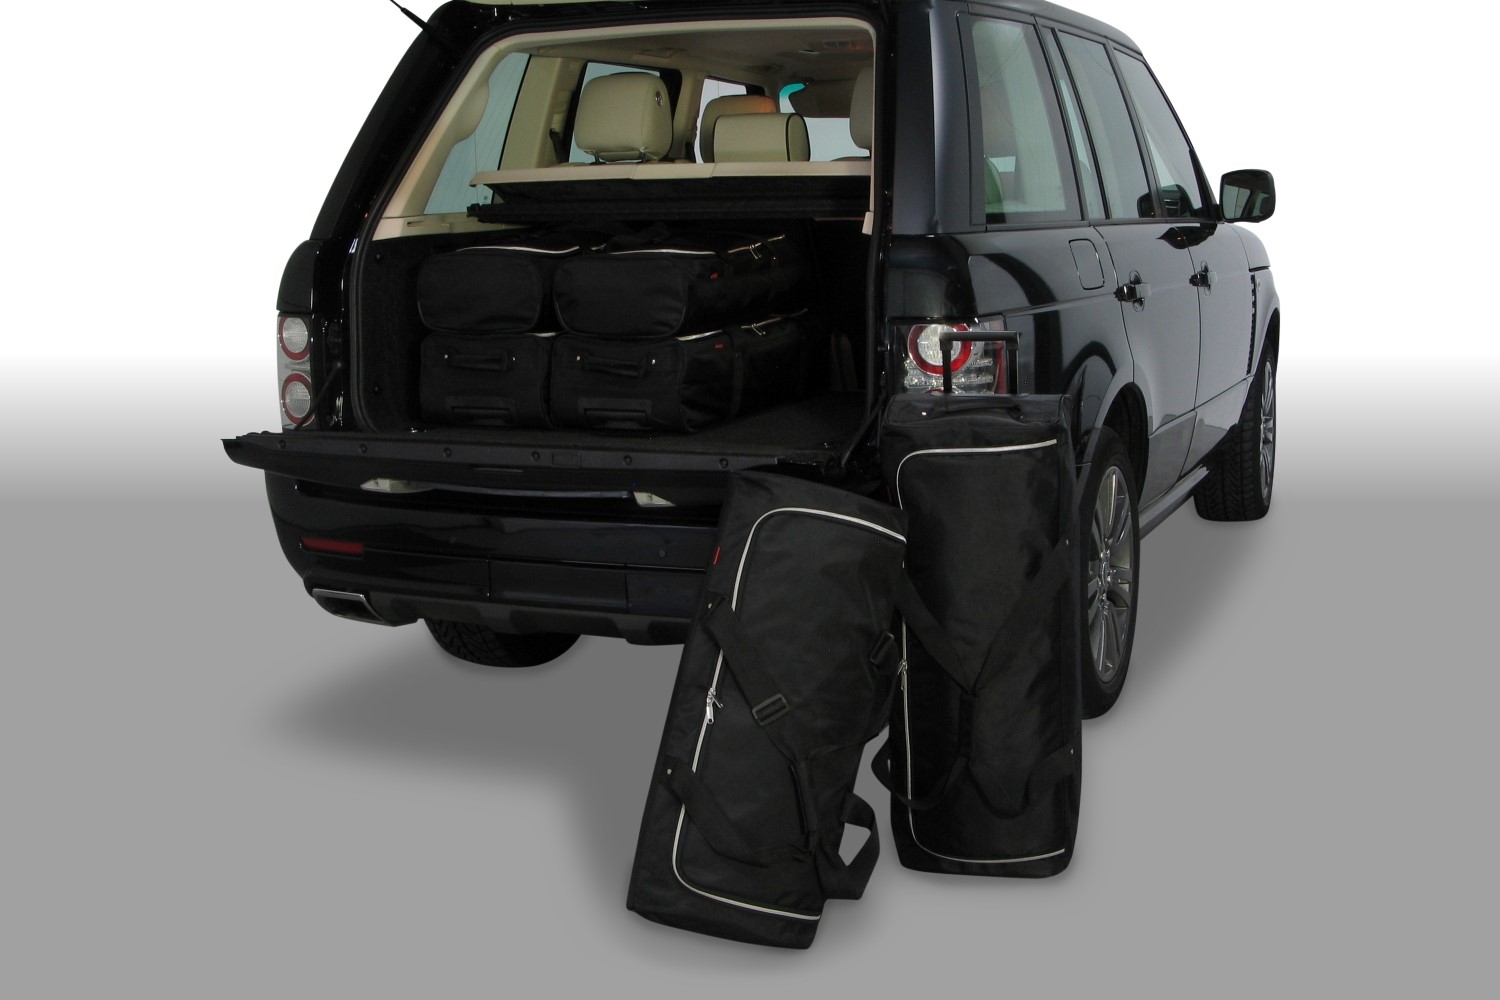 Car Bags Land Rover Range Rover 2003-2013